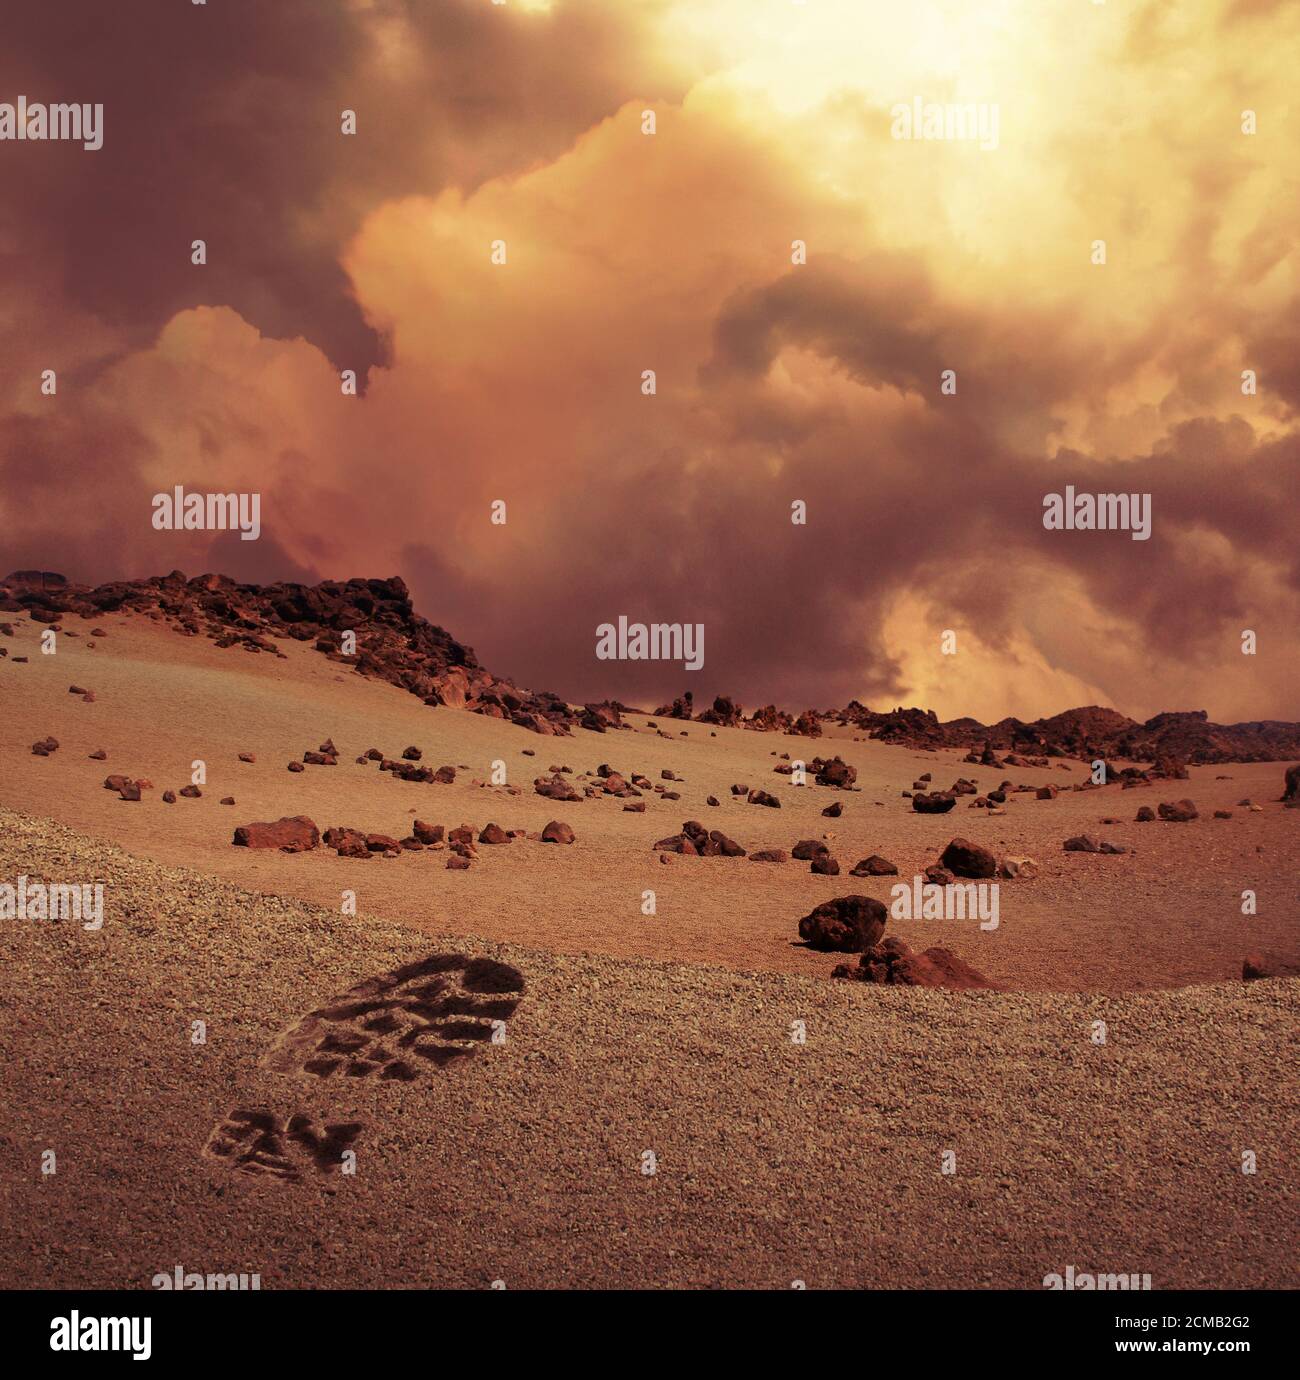 Illustration des ersten menschlichen Fußabdrucks auf sandigen und felsigen Planeten Mars Landschaft. Stockfoto